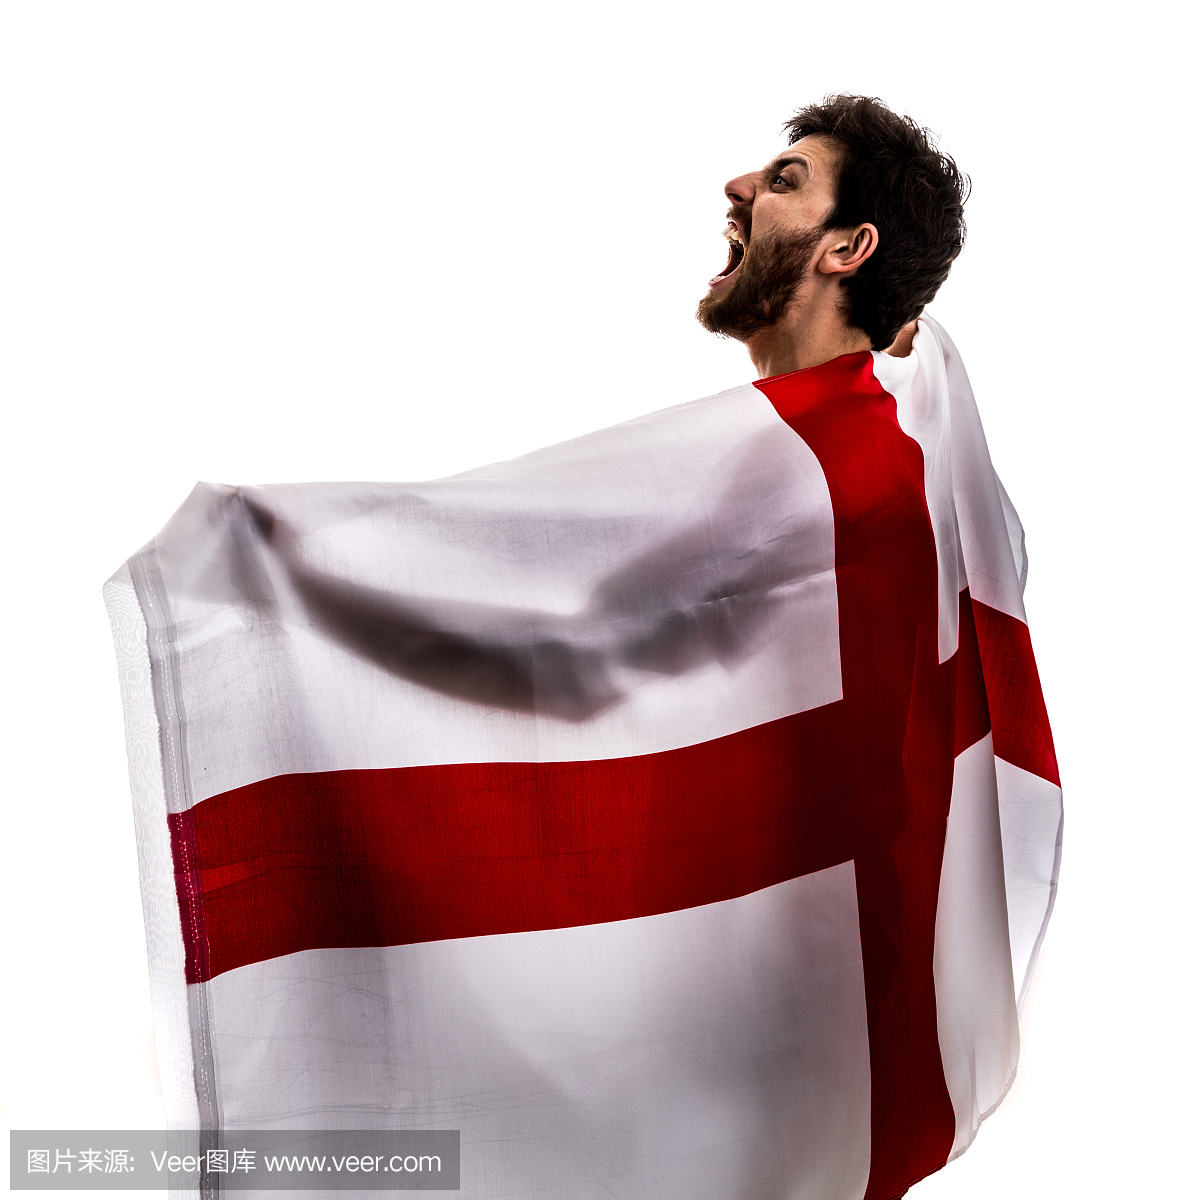 英国旗,大不列颠英联合王国国旗,圣乔治十字旗